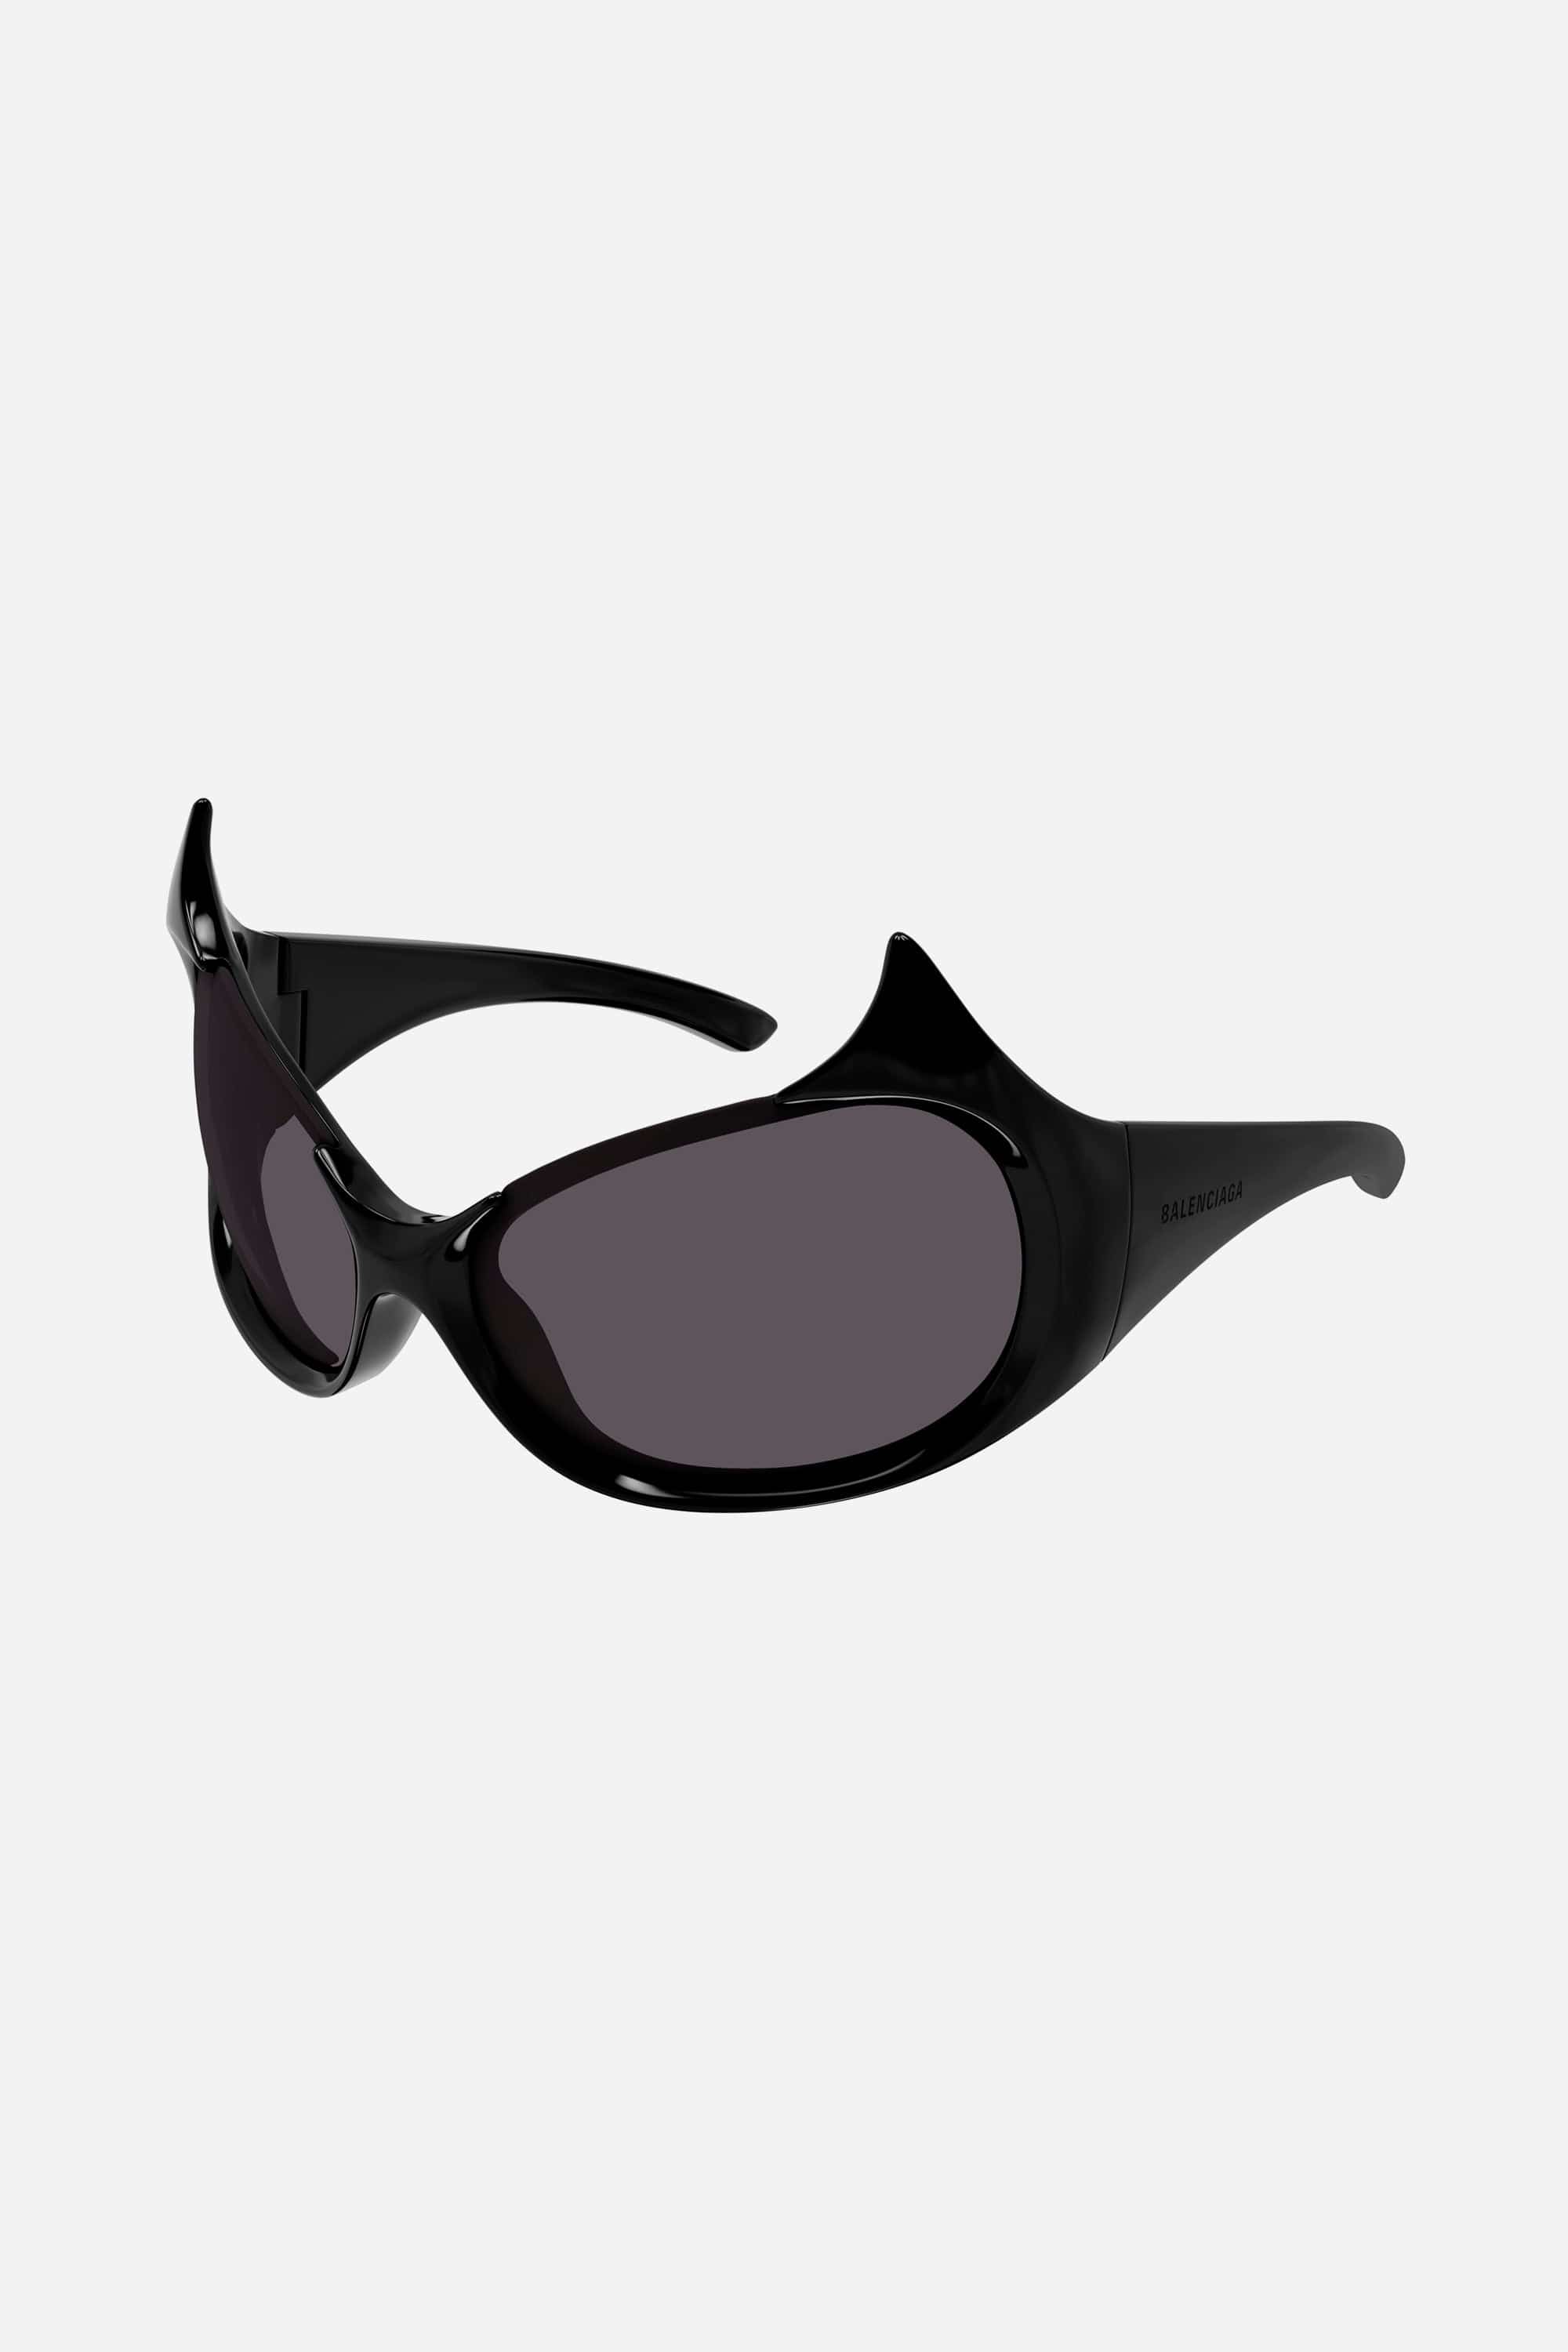 Balenciaga GOTHAM cat sunglasses in black - Eyewear Club